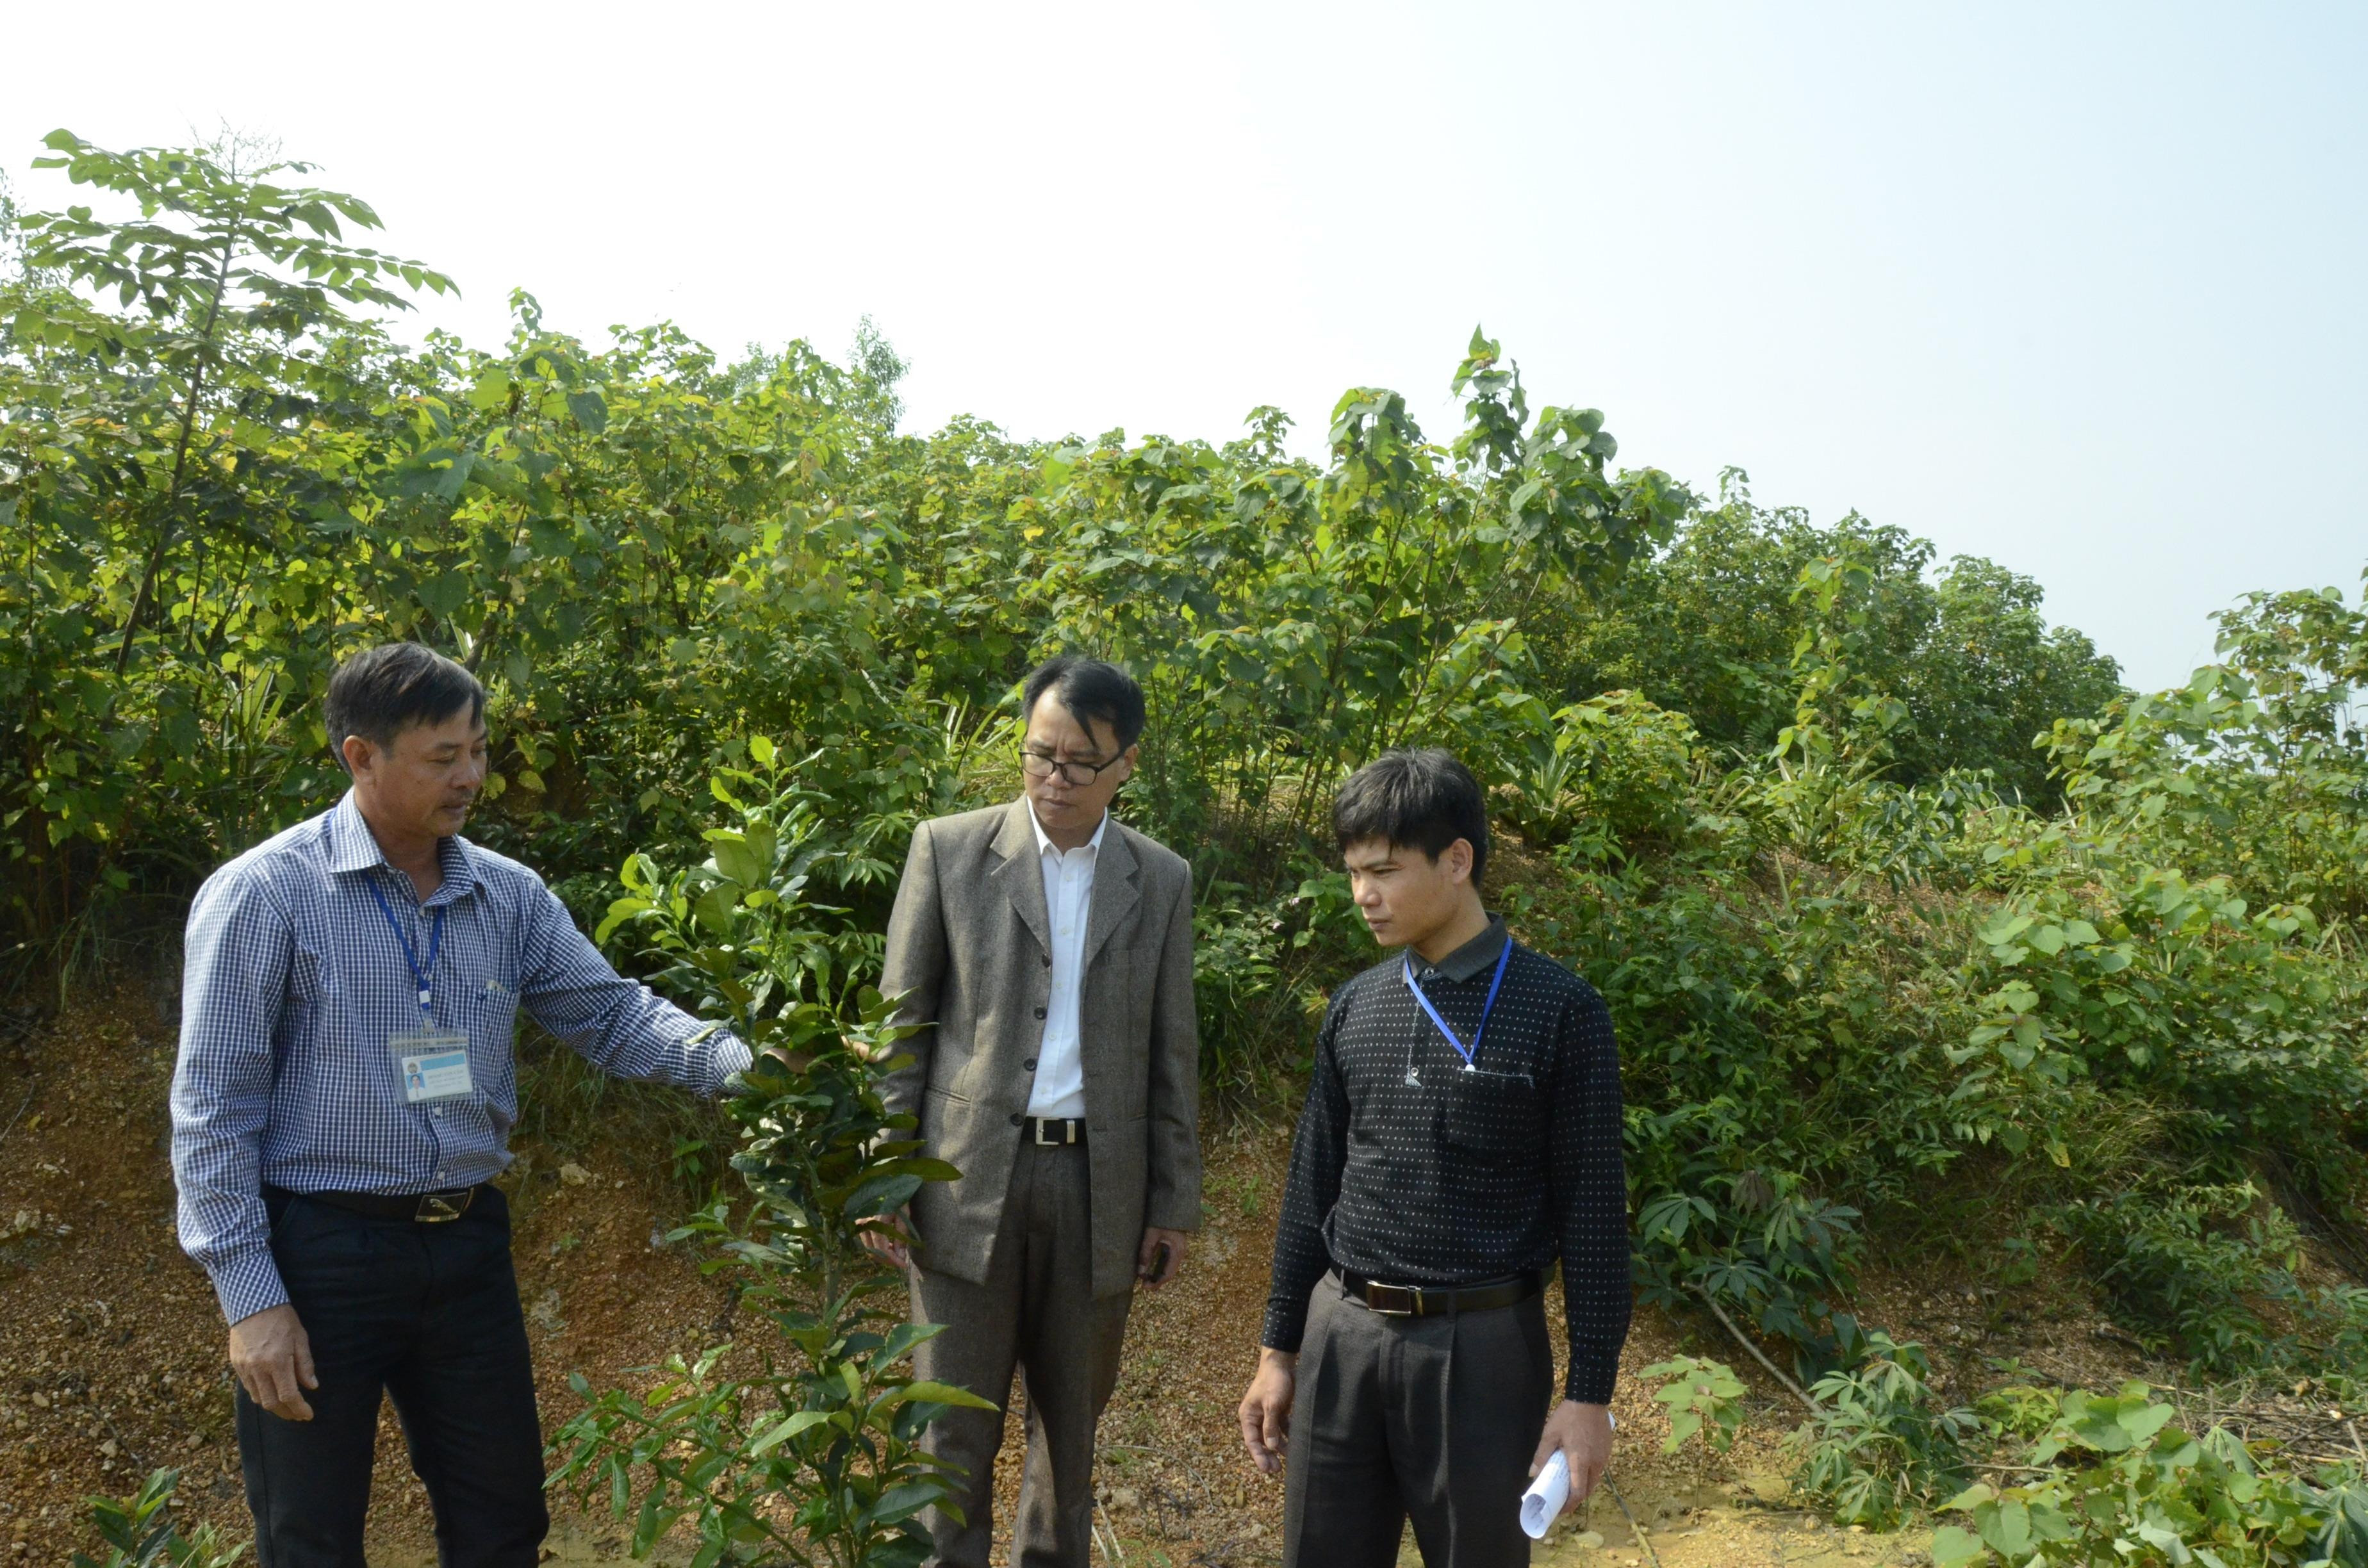 Cán bộ huyện, xã kiểm tra mô hình trồng cam trên đất đồi tại xã Tào Sơn (Anh Sơn). Ảnh: Thanh Lê